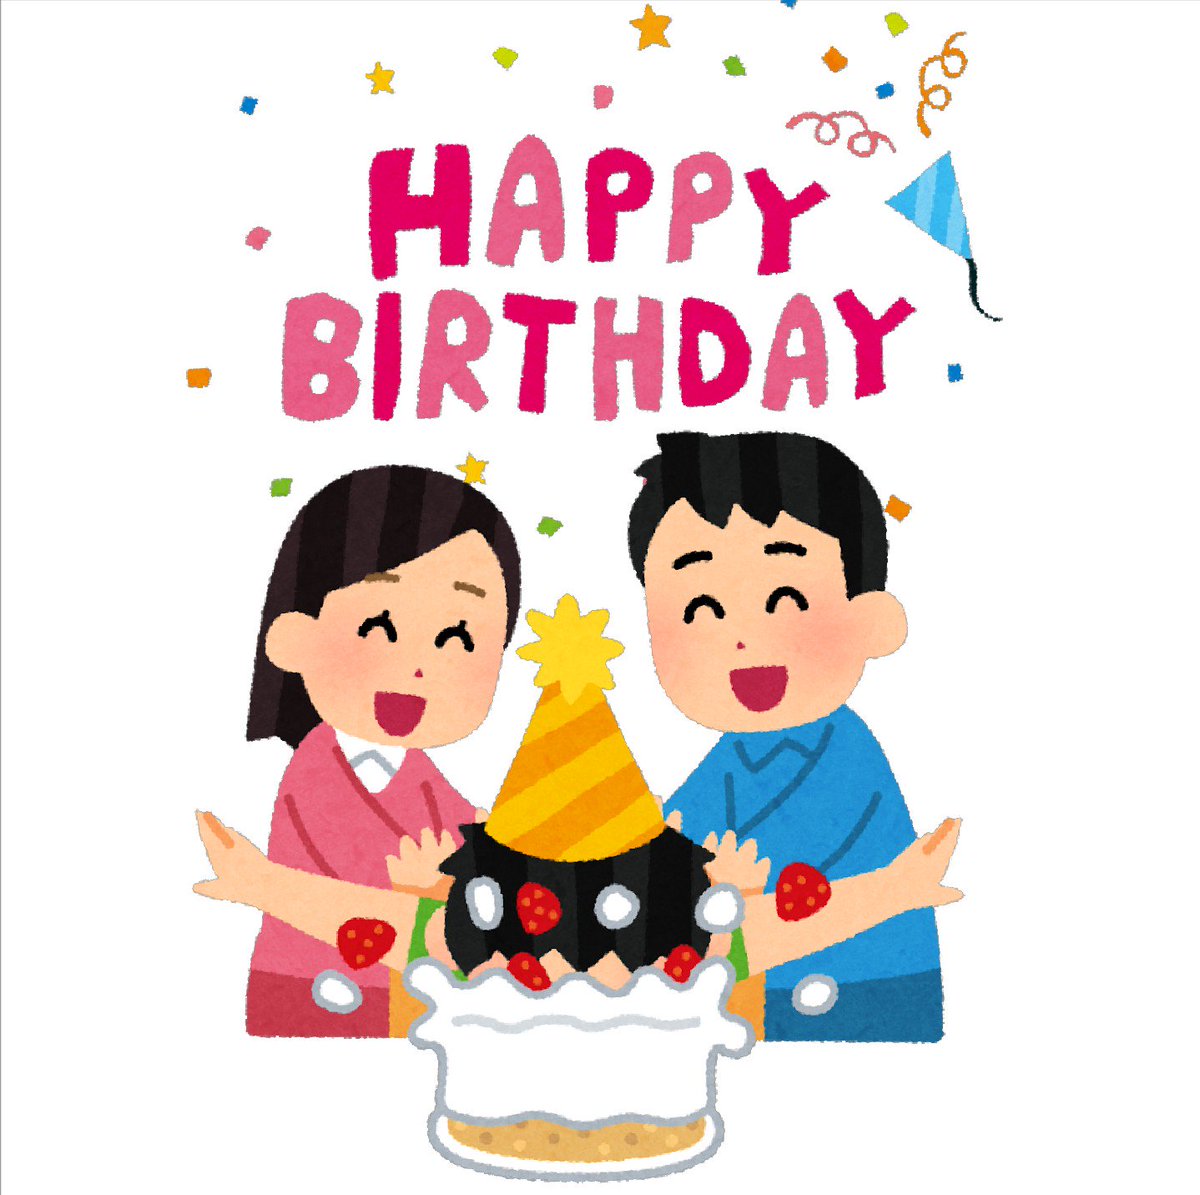 まいチクをいらすとやで再現 Twitterissa Dayukoume お誕生日おめでとうございます 使ったイラスト 2枚 誕生日のイラスト Happy Birthday タイトル文字 誕生日ケーキに顔を突っ込まれる人のイラスト T Co Kjqqgi9vds Twitter